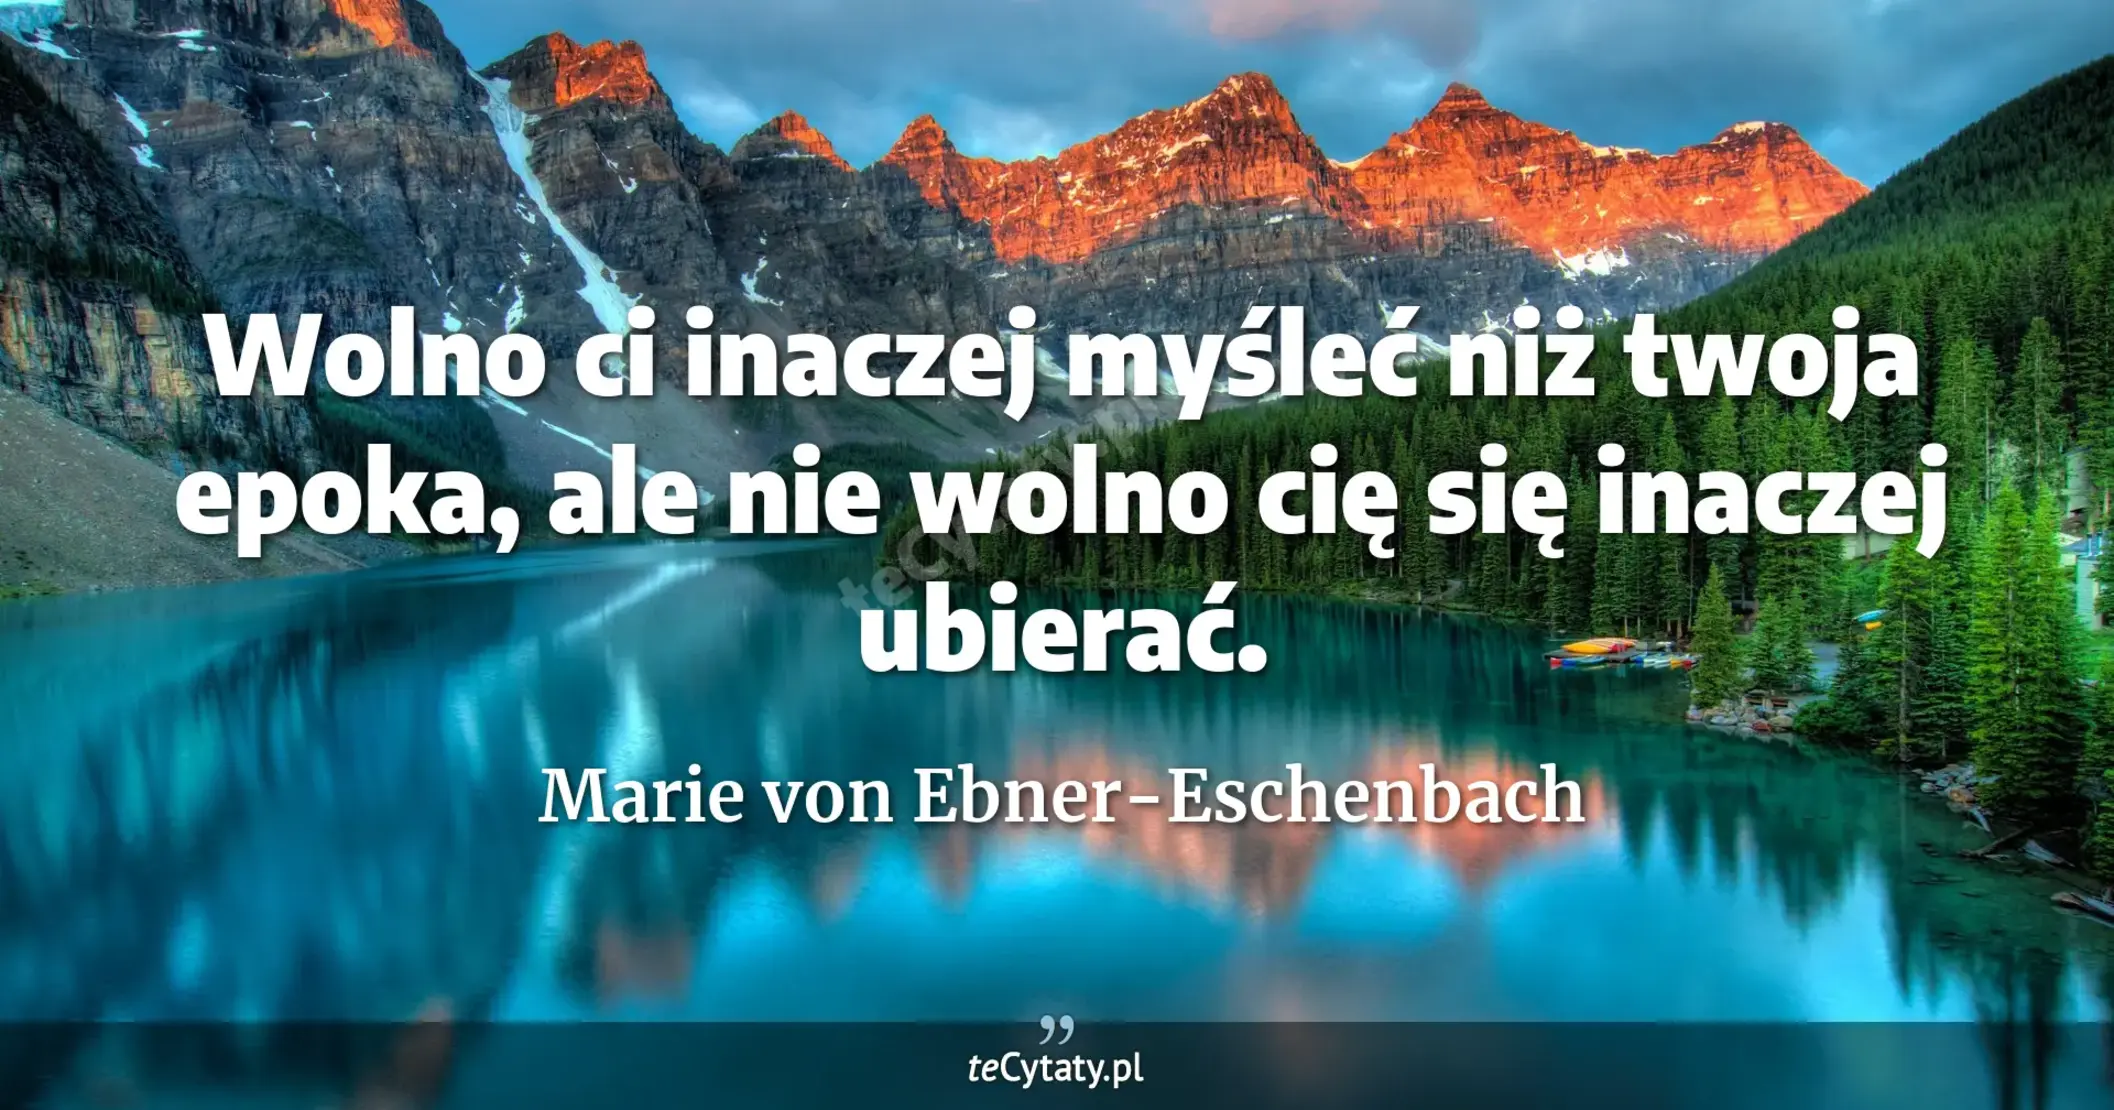 Wolno ci inaczej myśleć niż twoja epoka, ale nie wolno cię się inaczej ubierać. - Marie von Ebner-Eschenbach